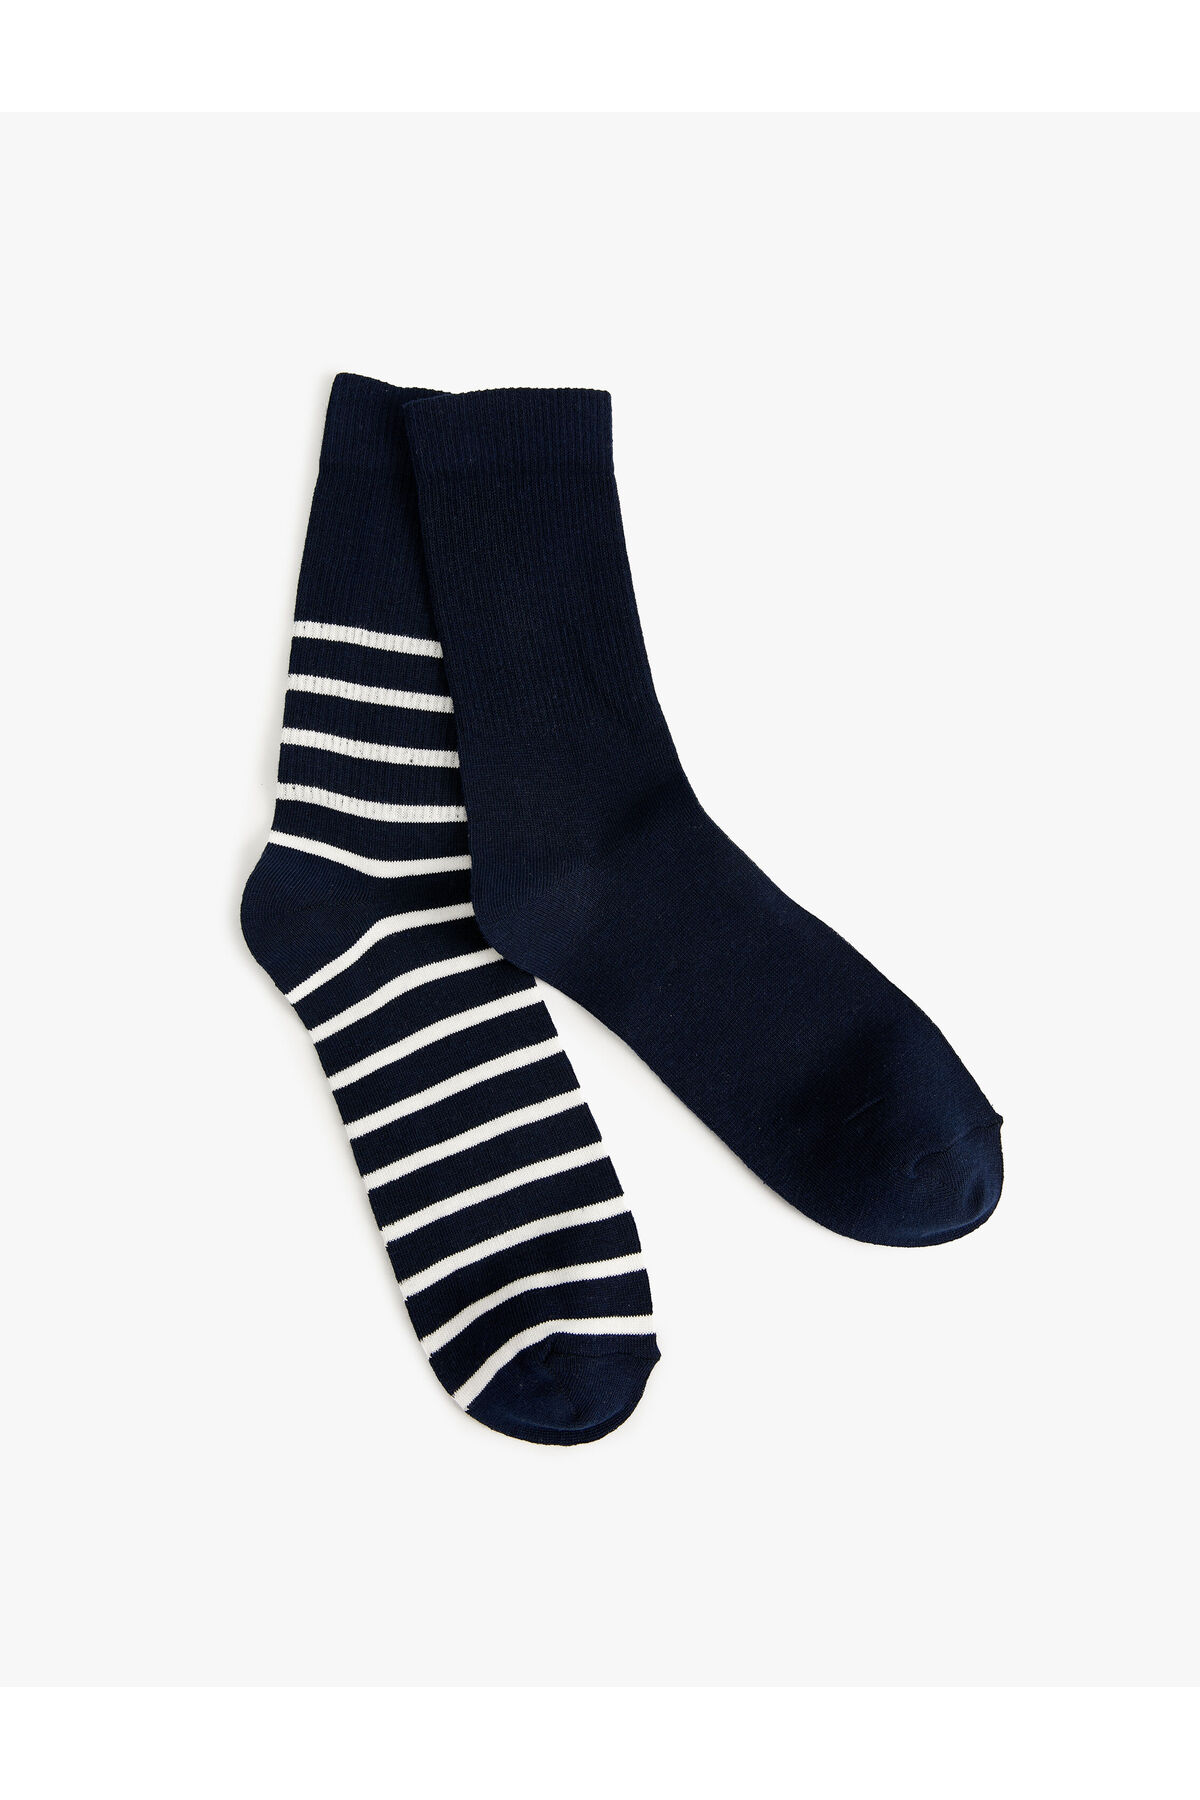 Levně Koton Set of 2 Striped Socks